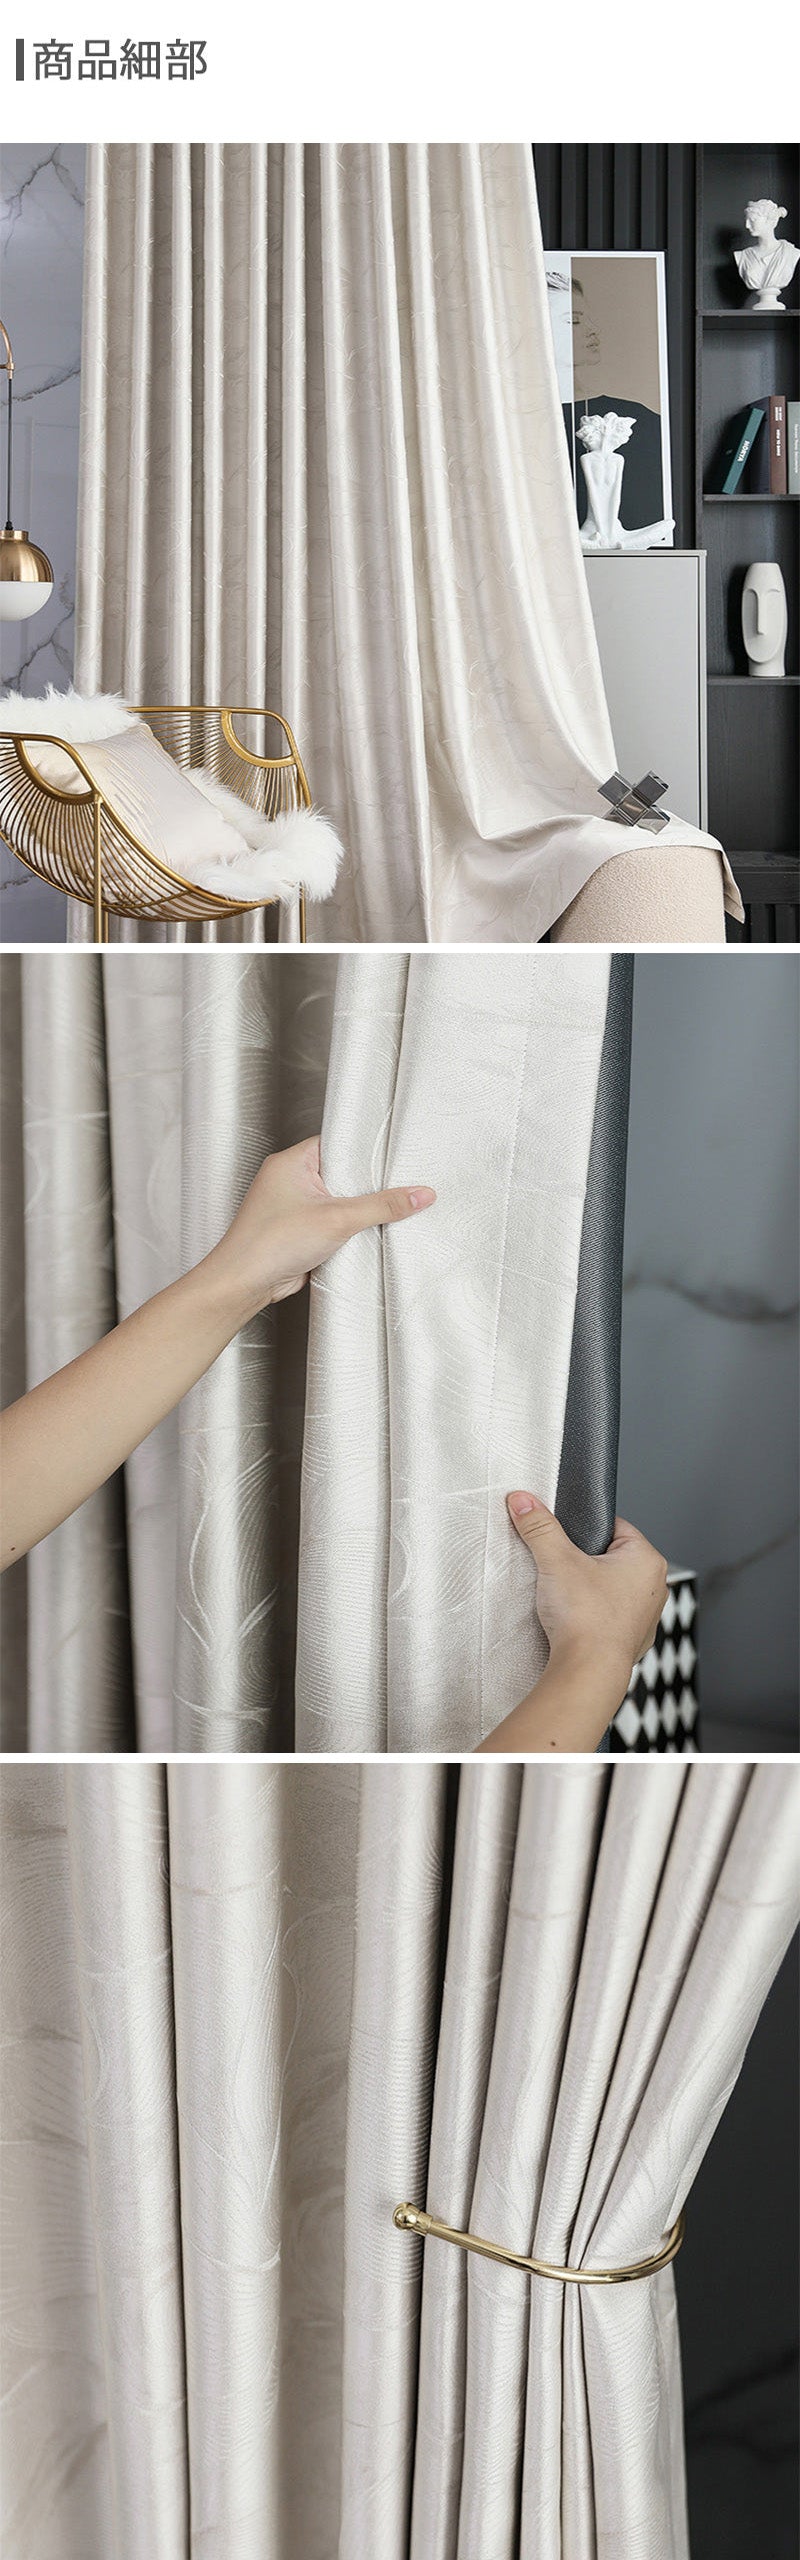 【ドレープカーテン】贅沢感 銀白色 カーテンの細部画像